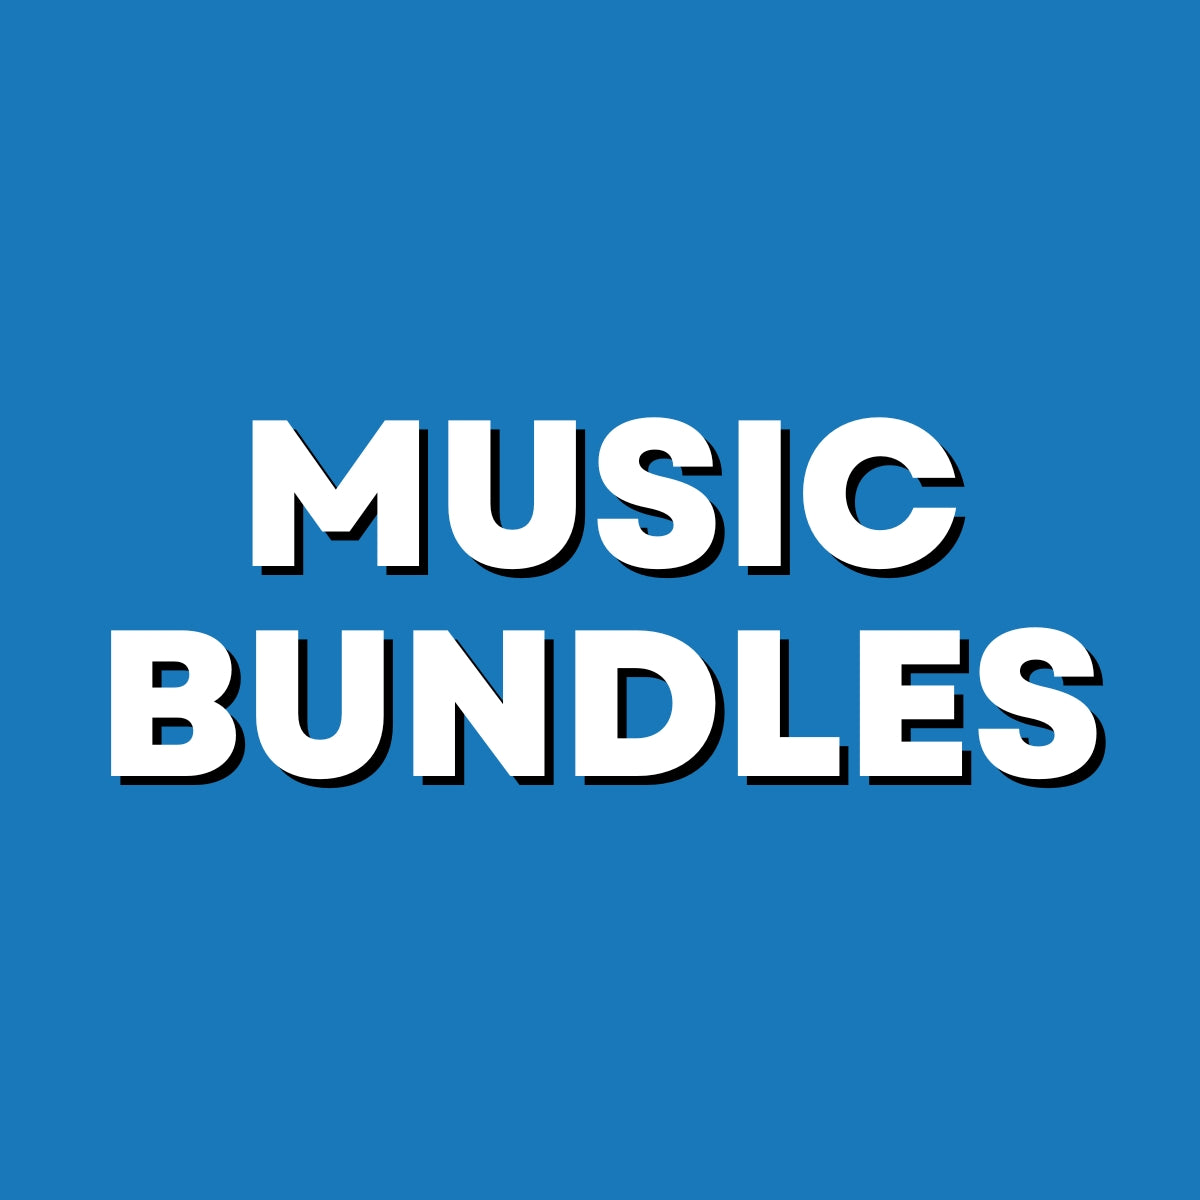 Music Bundles